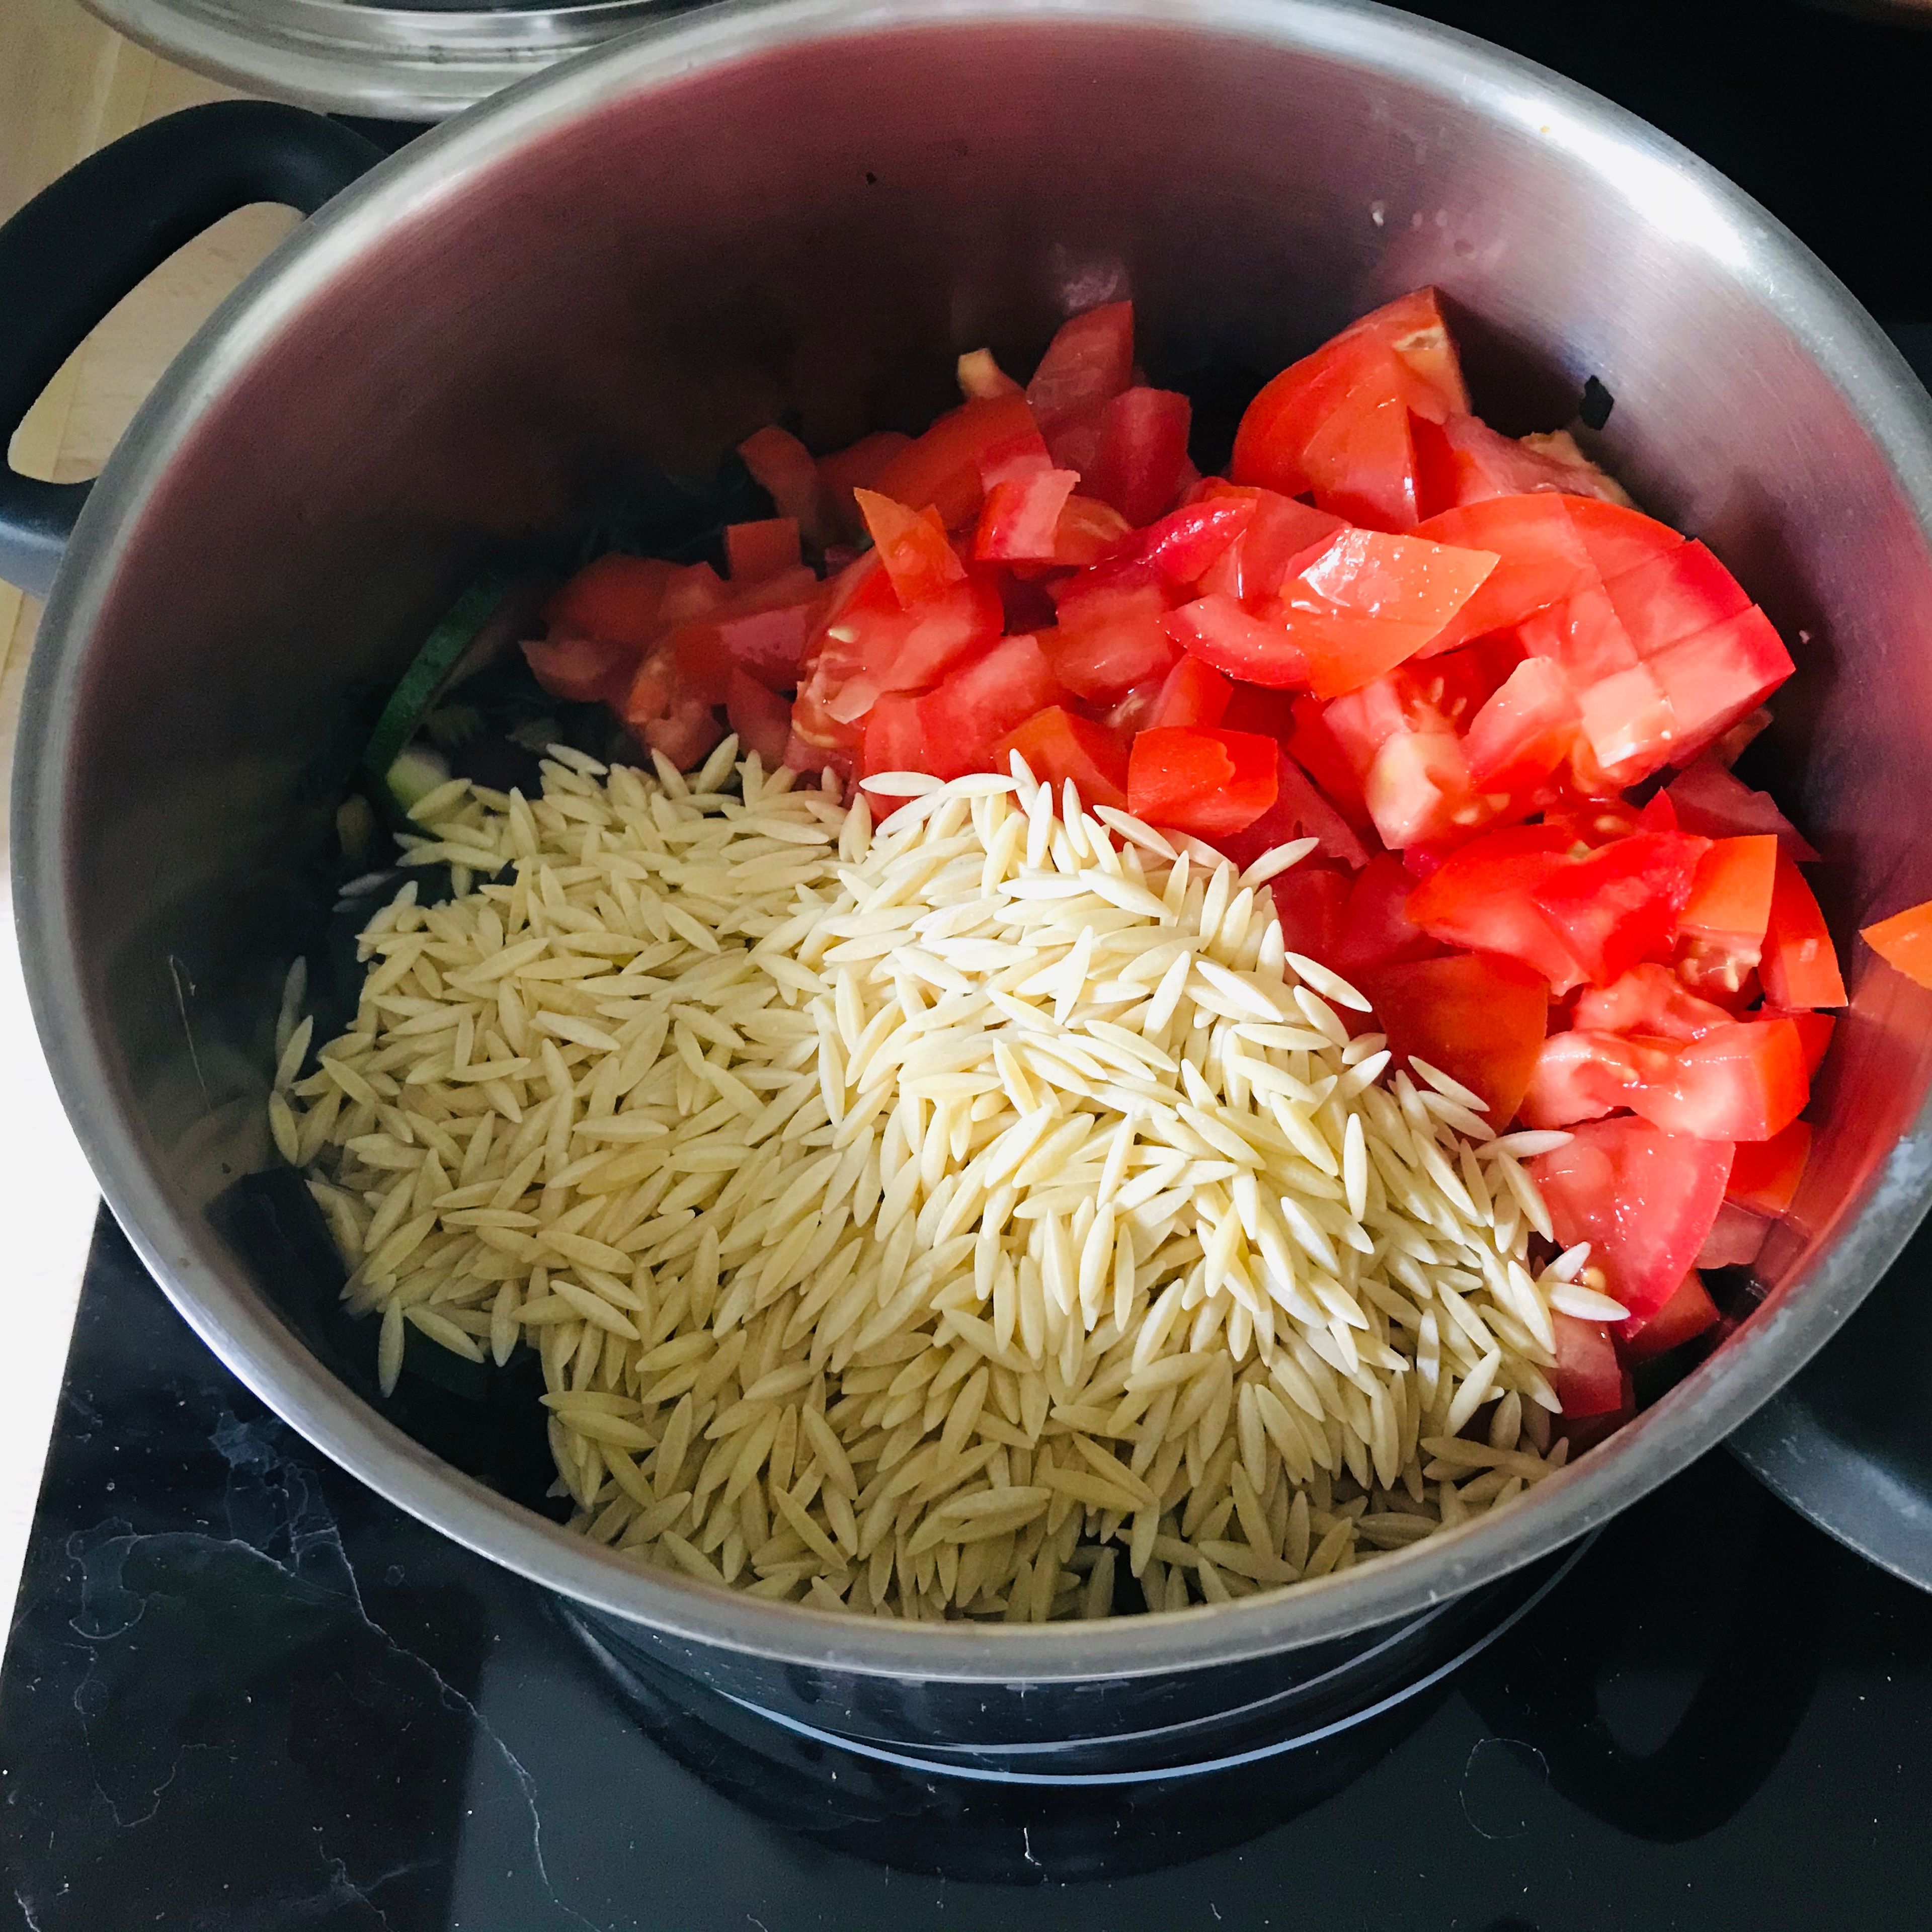 Tomaten, Nudeln und Gemüsebrühe zu dem Gemüse geben und für 15 Minuten kochen lassen. Zwischendurch umrühren und bei Bedarf noch etwas Gemüsebrühe hinzugeben.